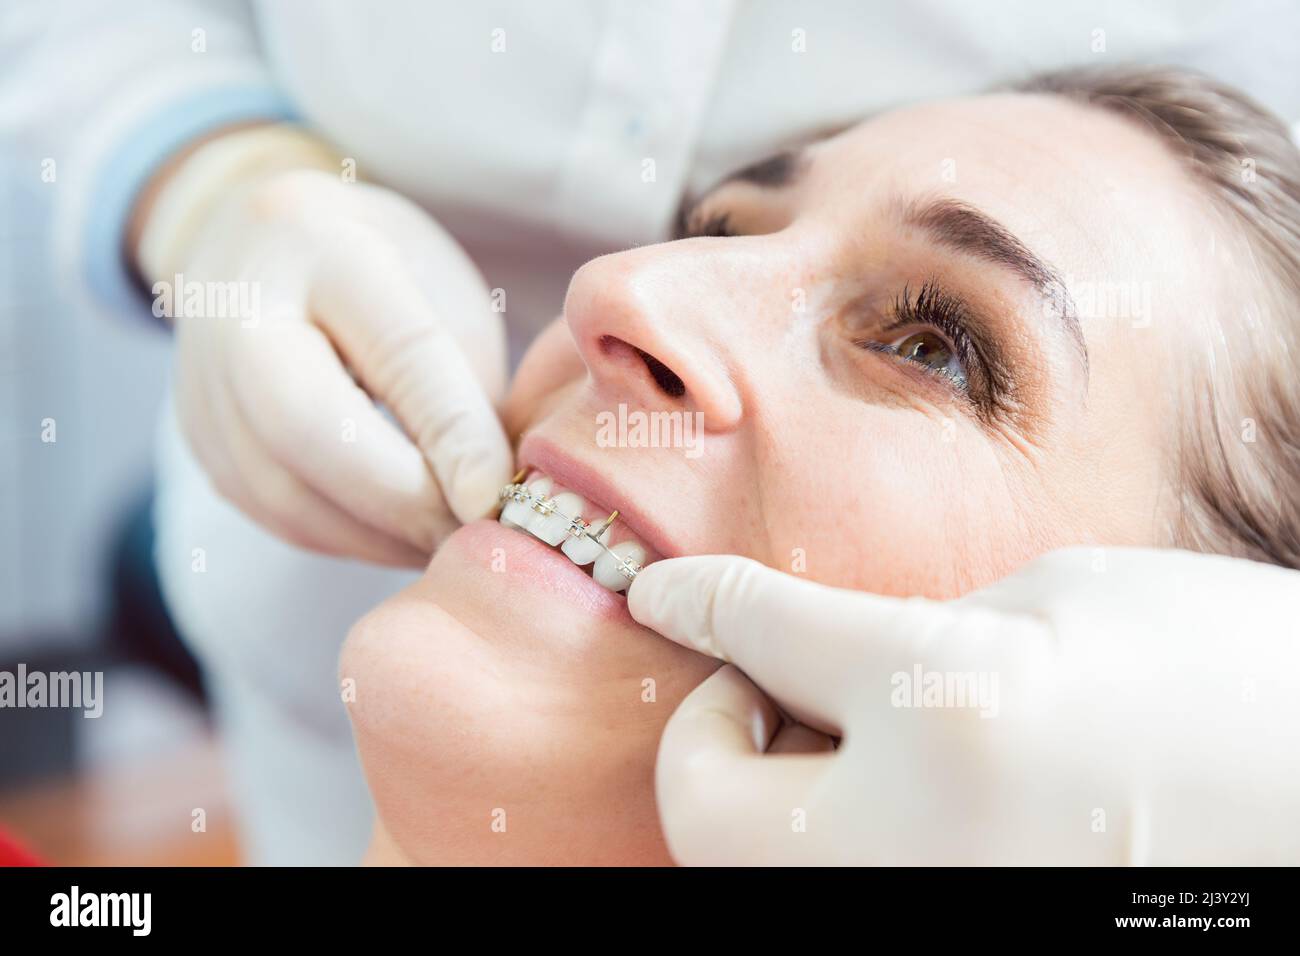 El dentista fija aparatos ortopédicos en los dientes de la mujer Foto de stock